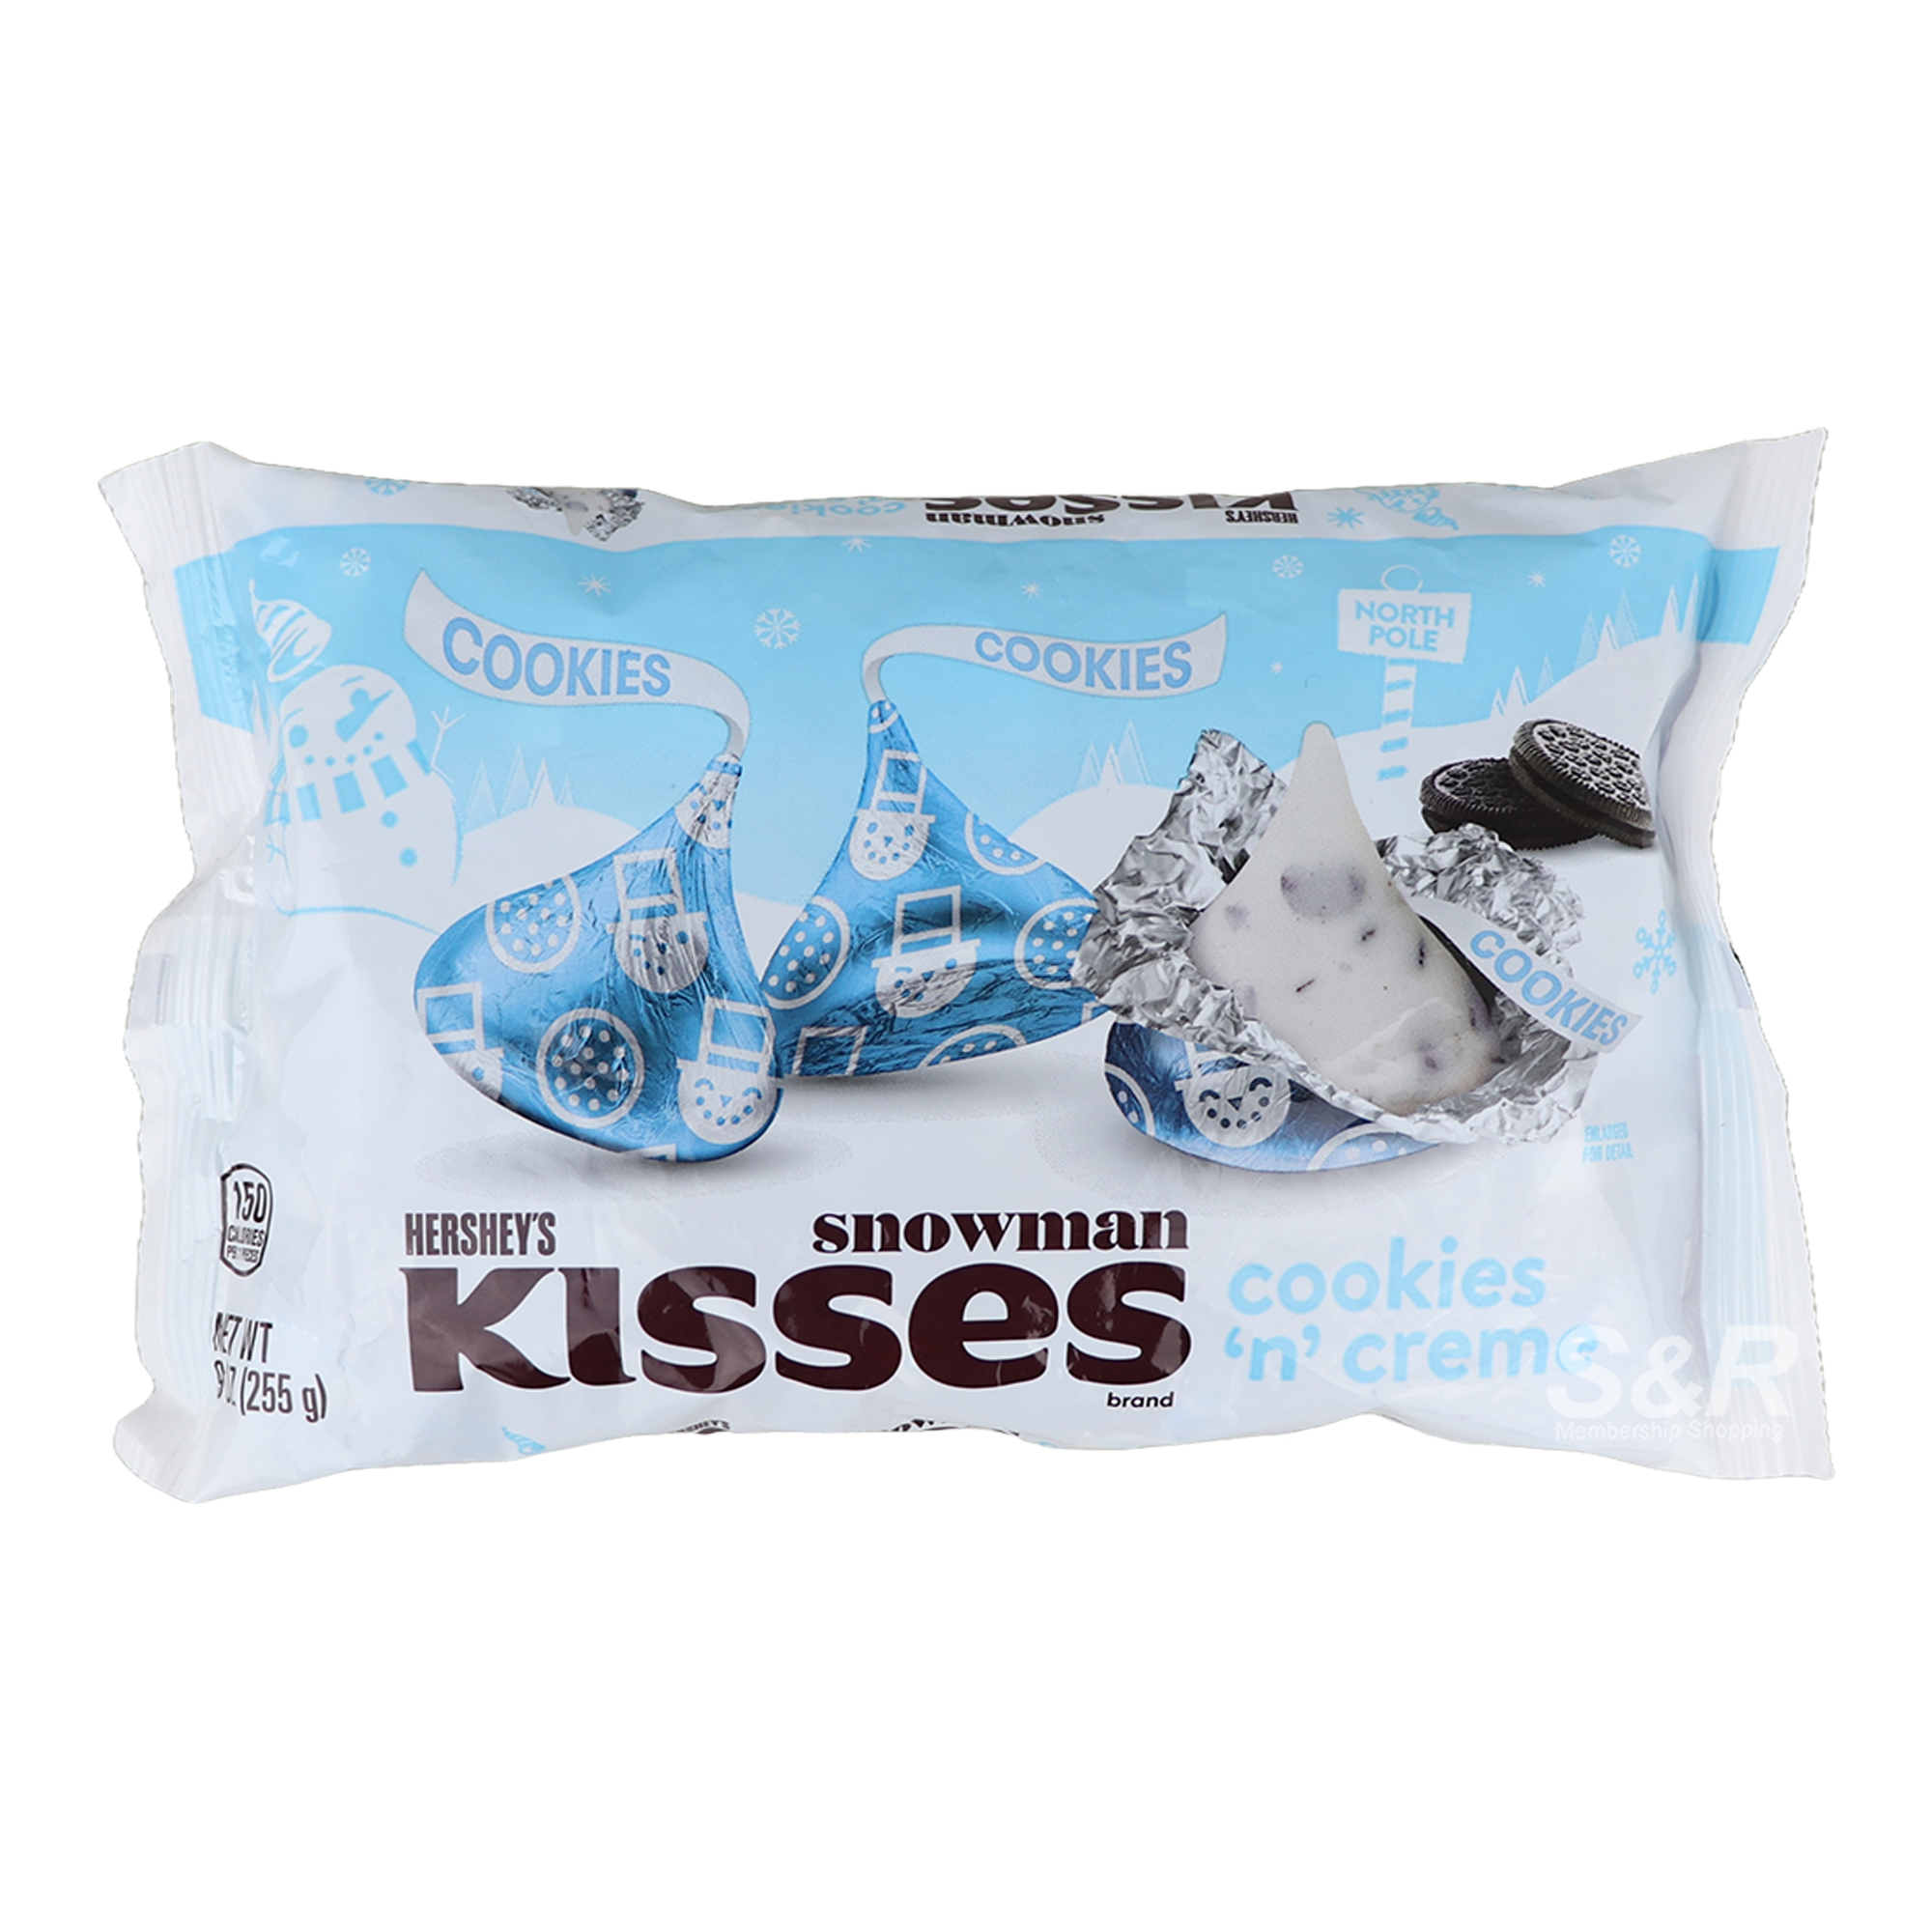 Hershey's Kisses Snowman Cookies 'n' Creme 255g